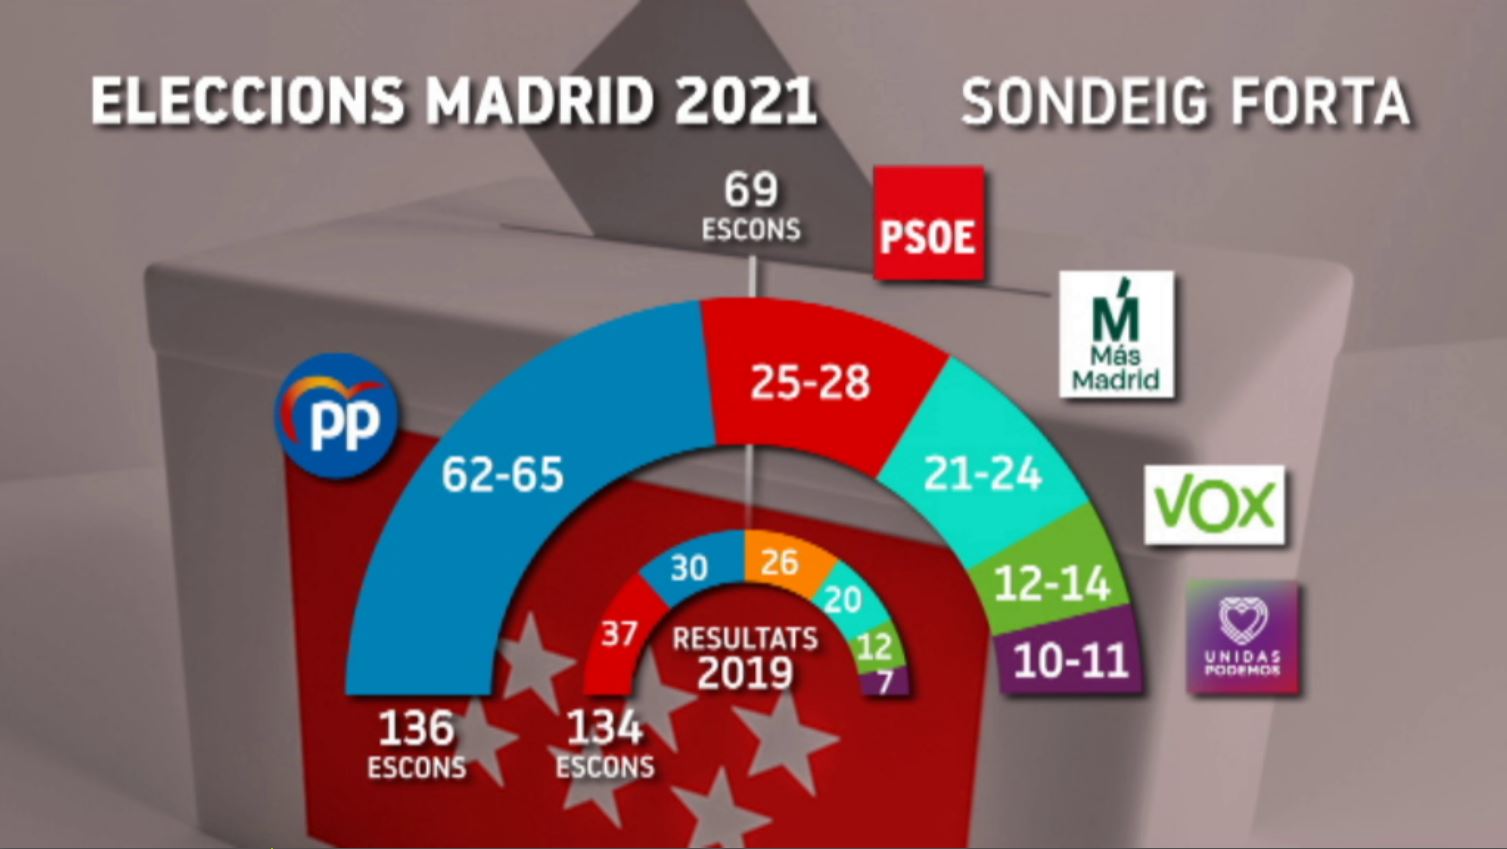 El PP guanyaria les eleccions madrilenyes amb un 43,7%25 dels vots, segons el sondeig de FORTA